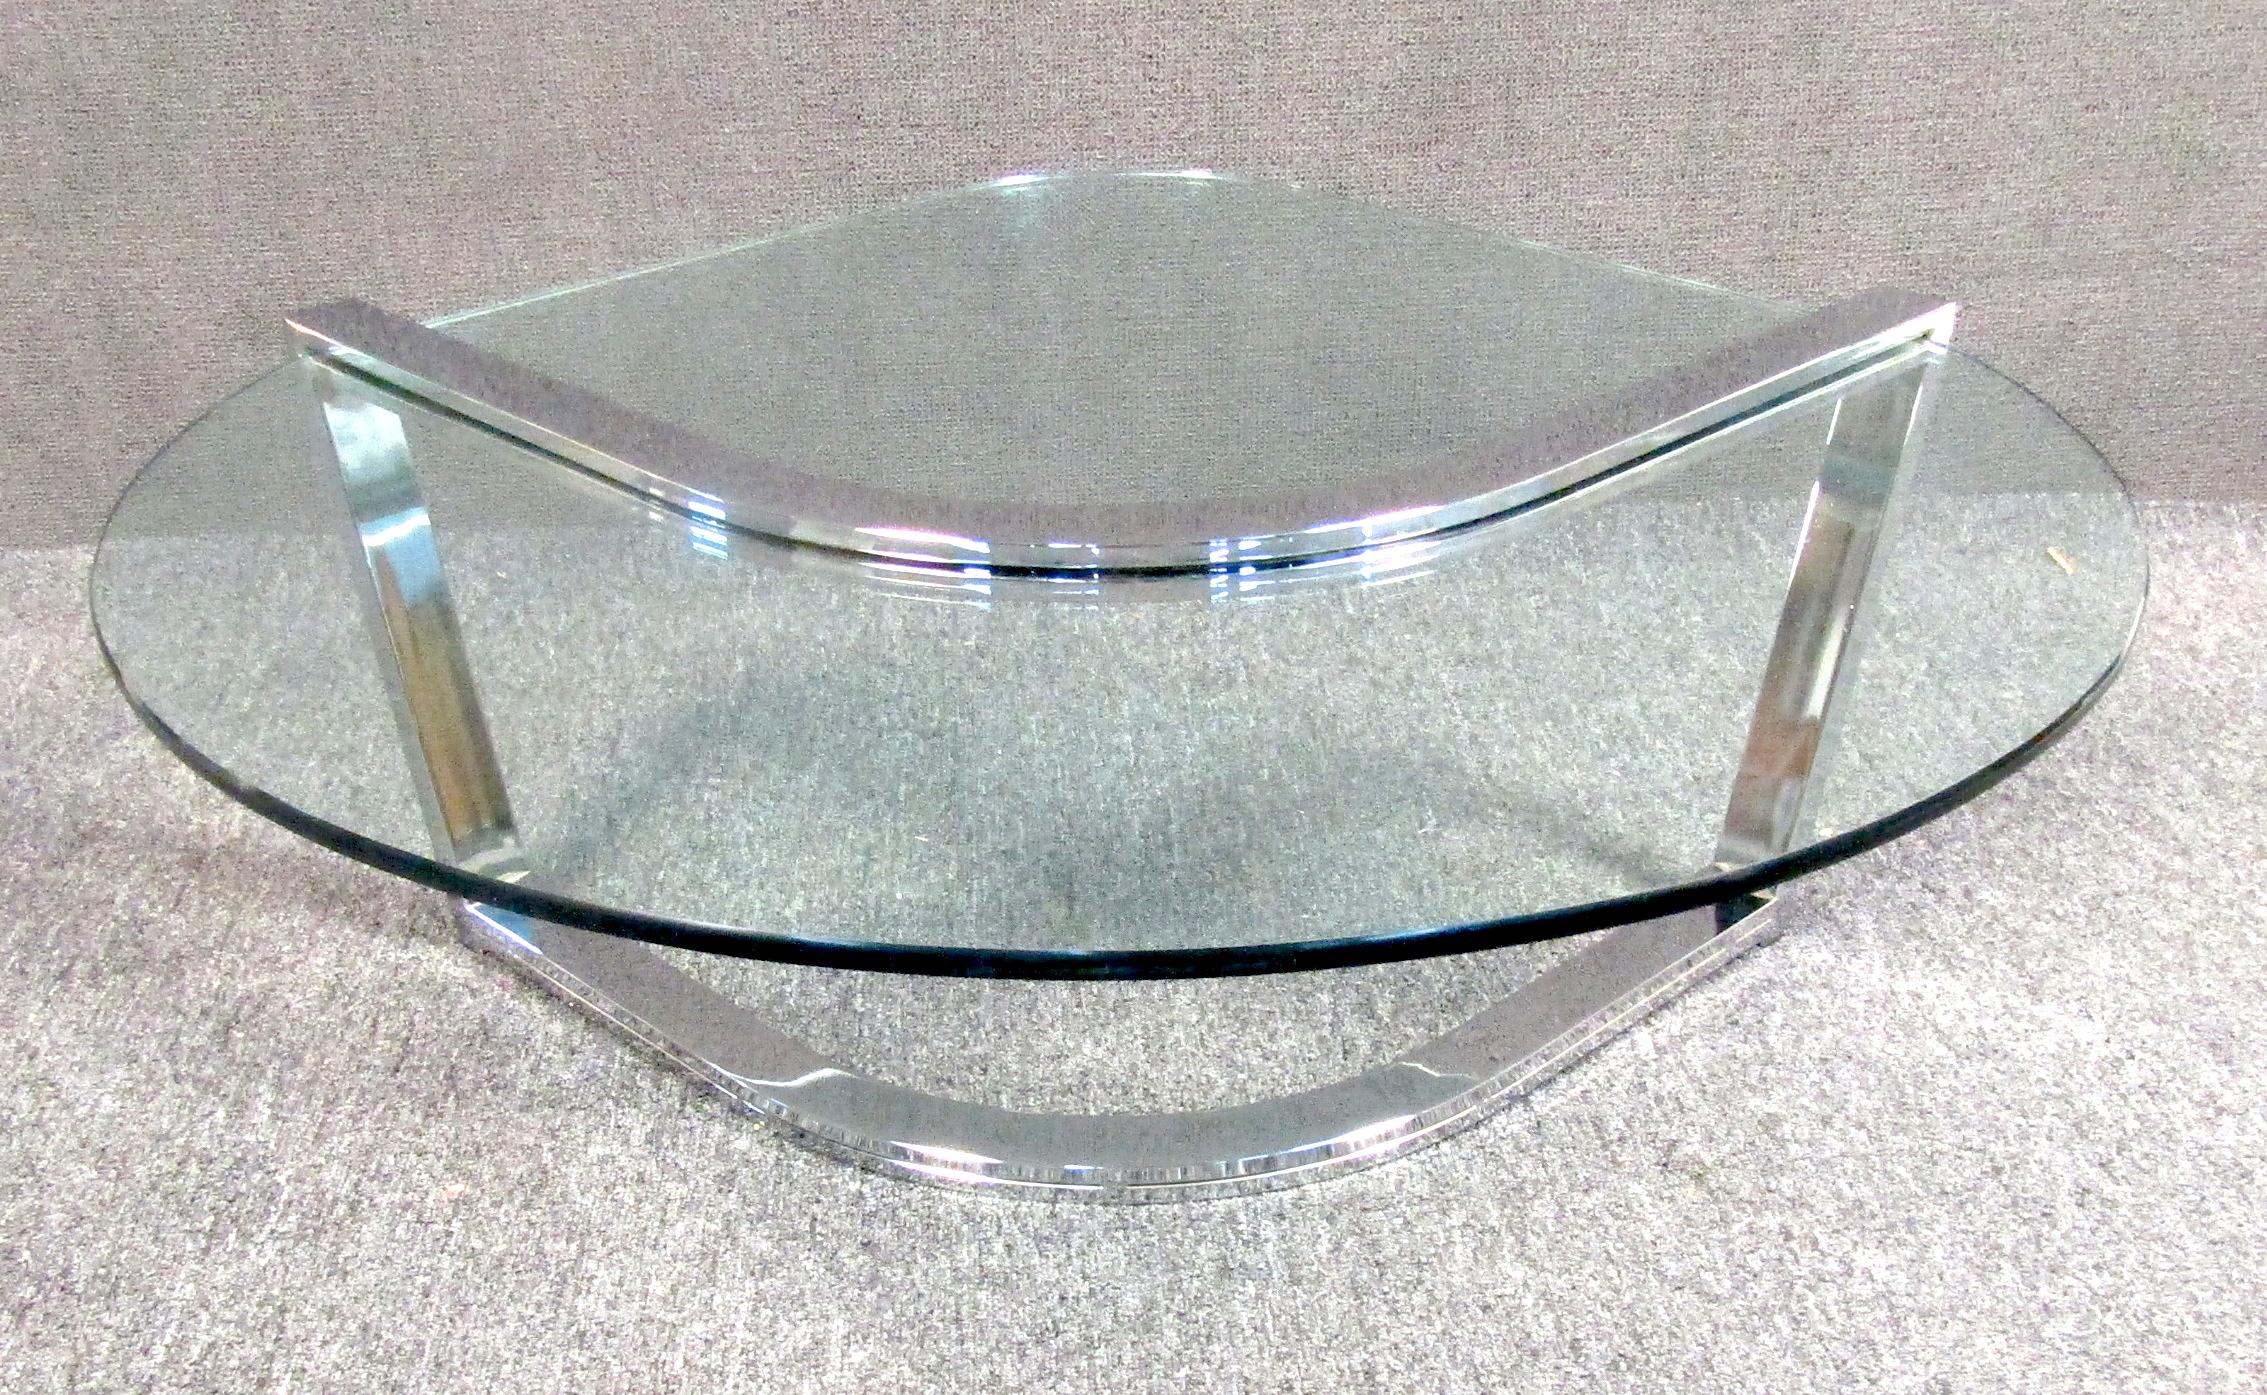 Table basse en verre et chrome de Pace, élégante et moderne, datant du milieu du siècle dernier, avec un plateau en verre en forme de goutte d'eau.

Veuillez confirmer la localisation de l'article (NY ou NJ).